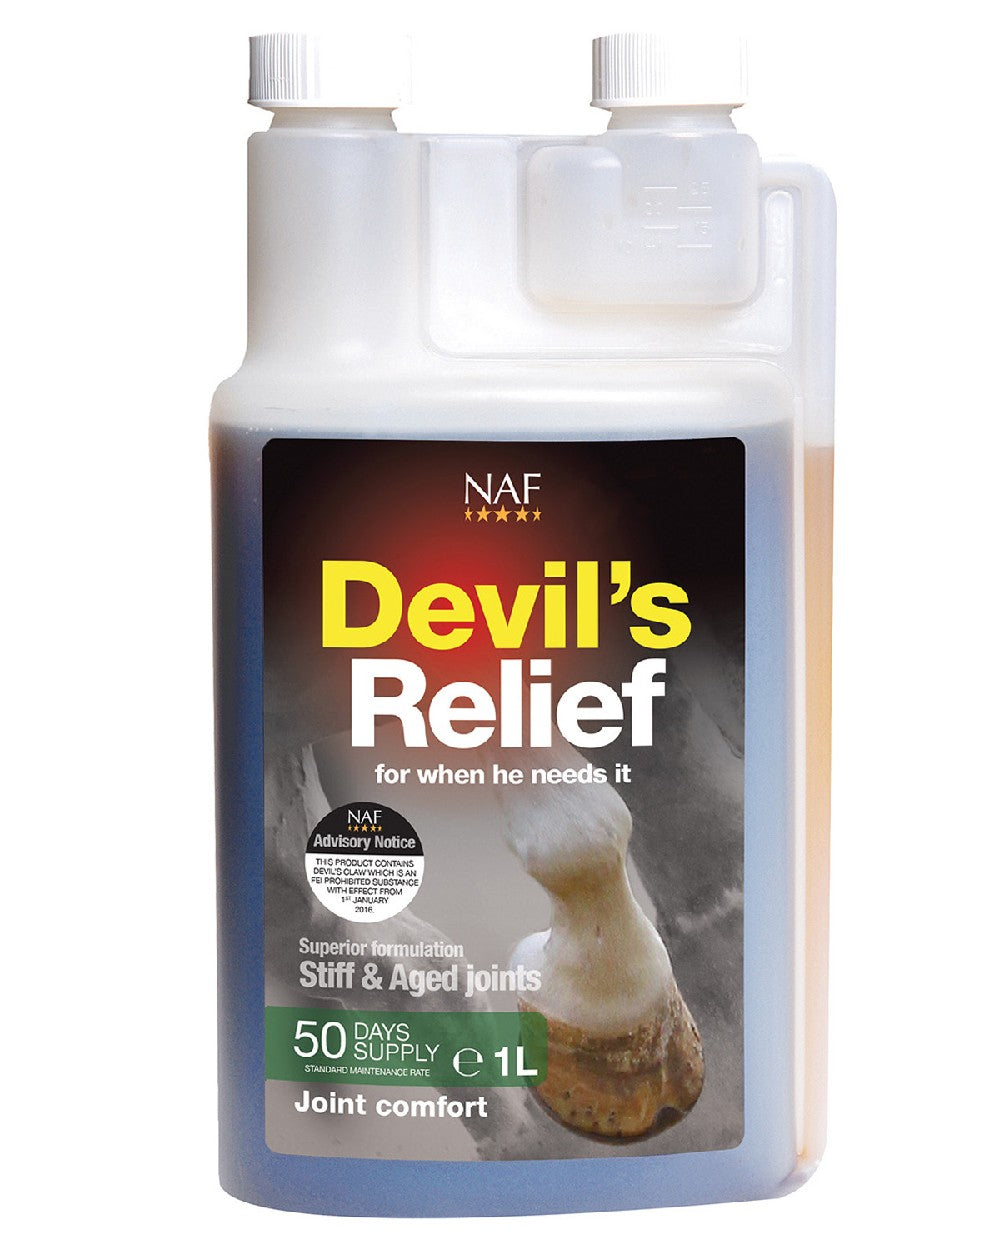 NAF Devils Relief 1l on white background